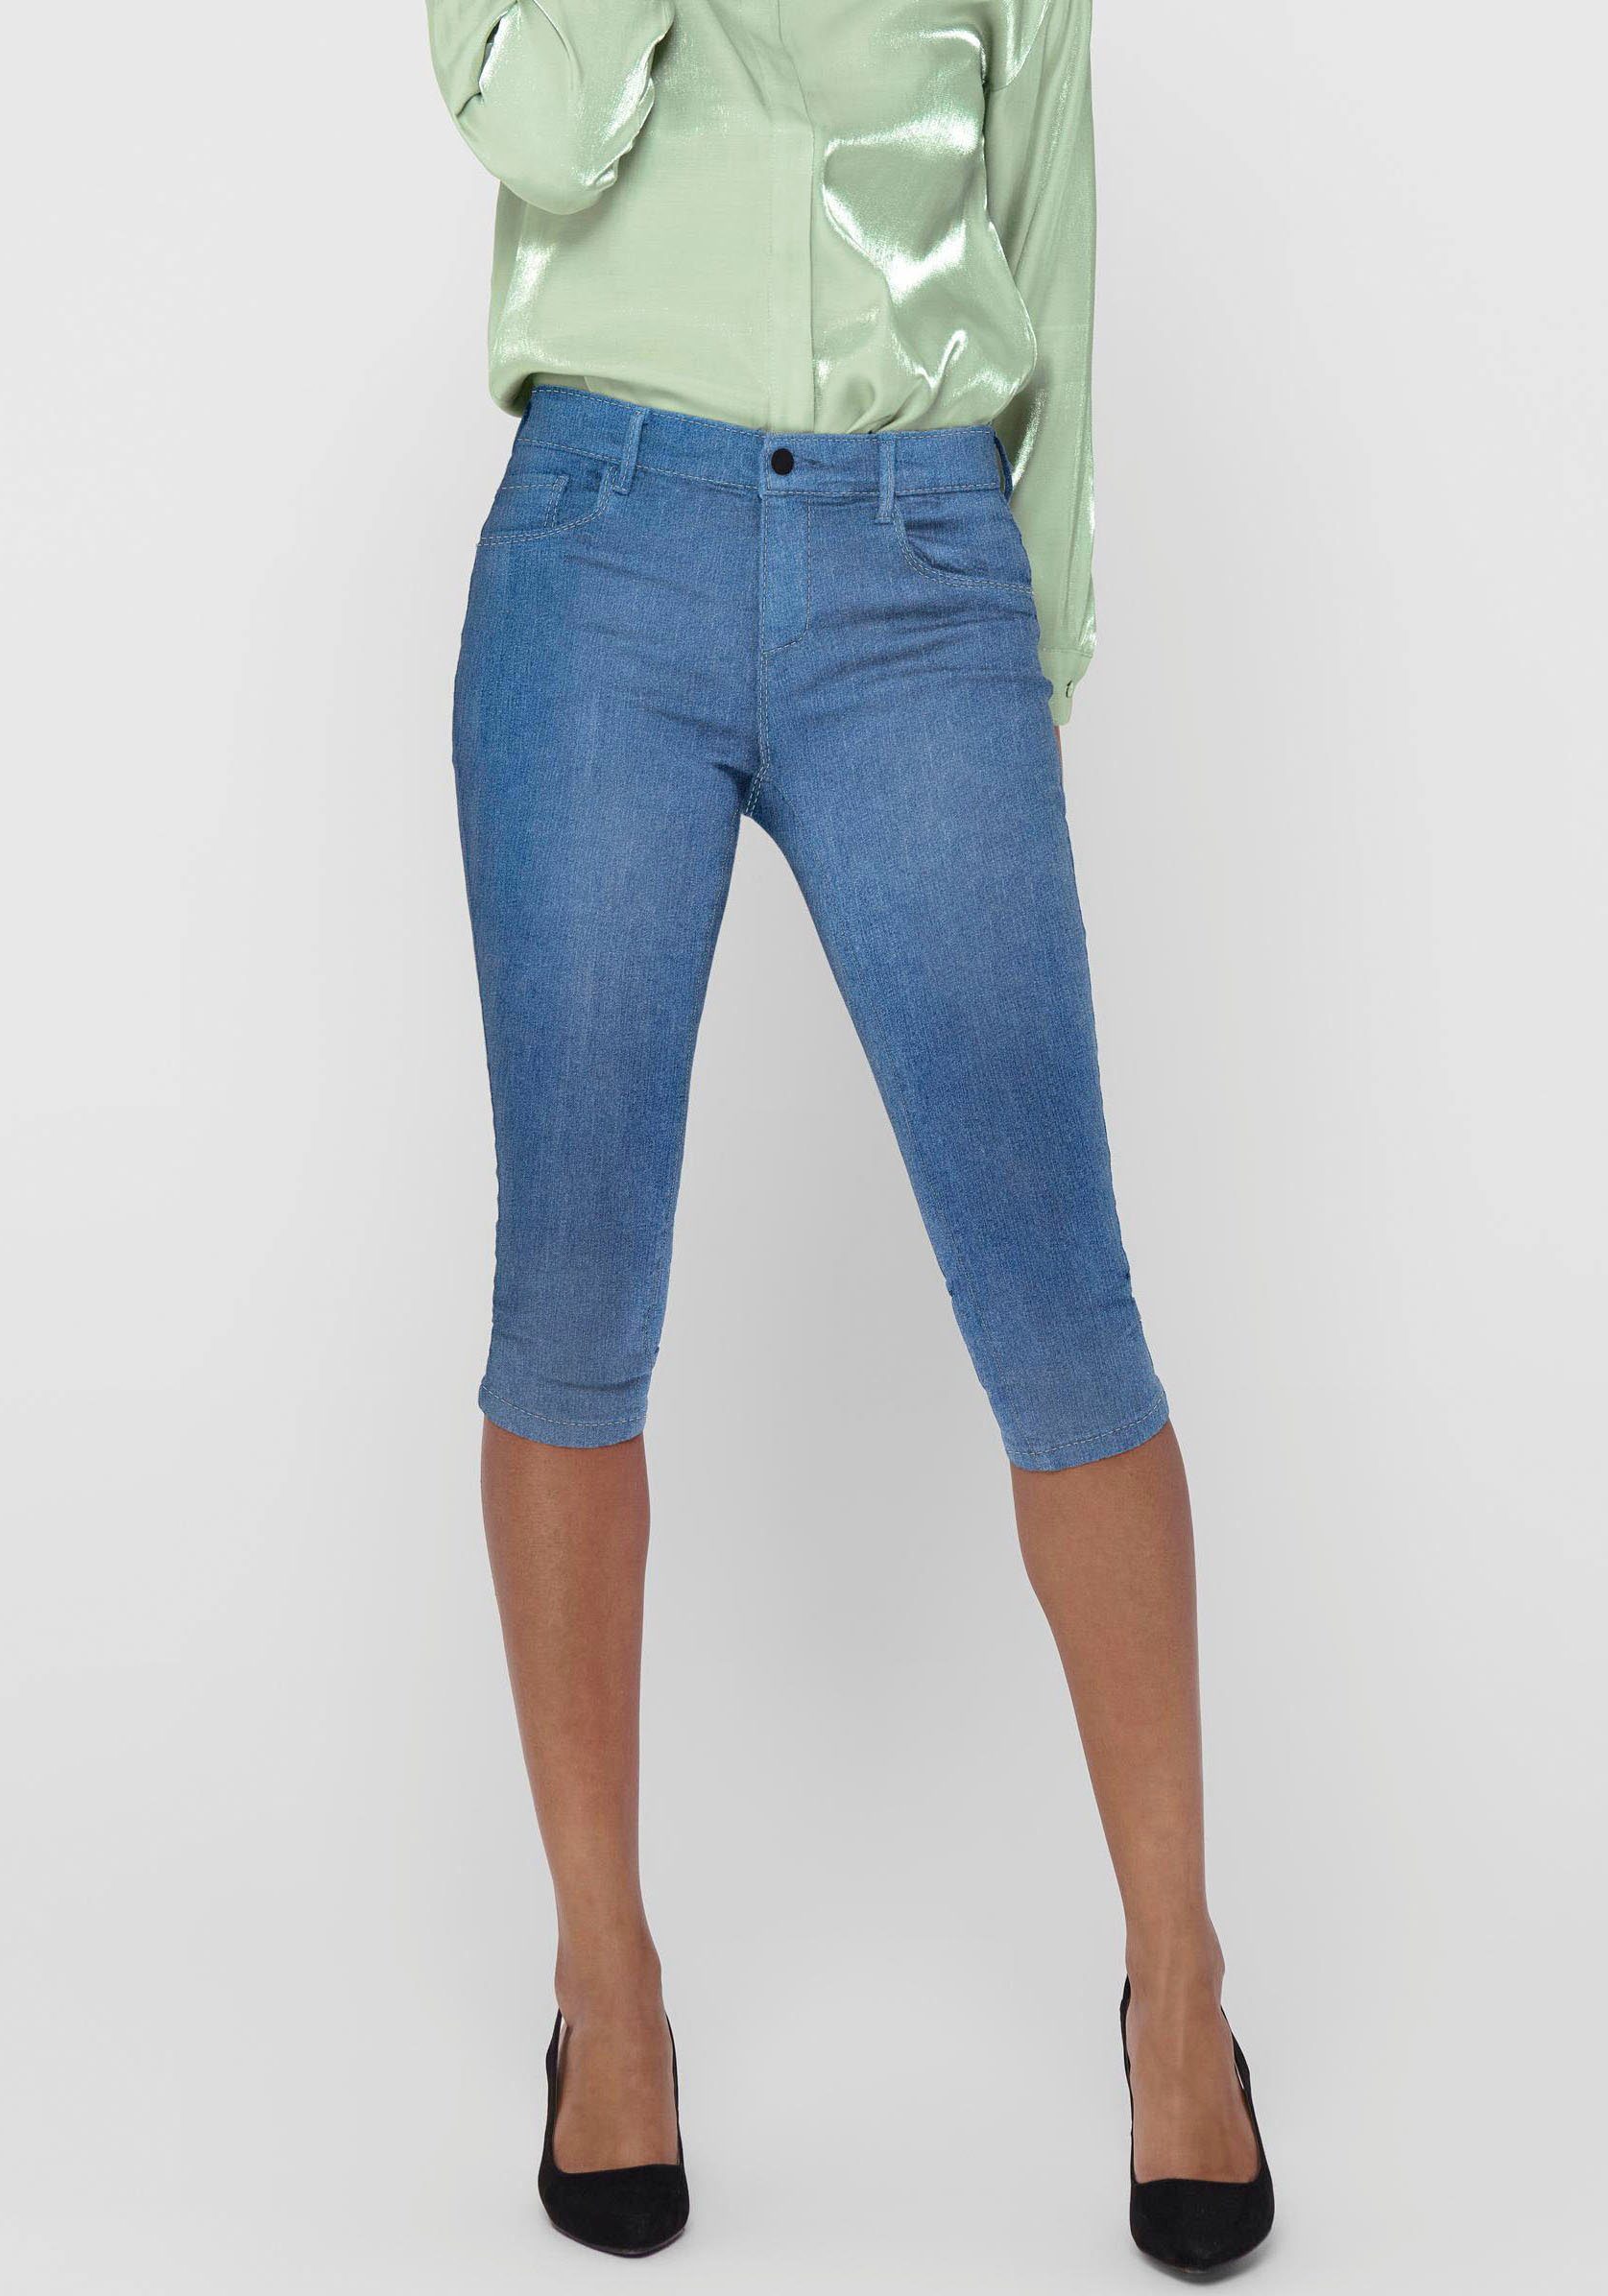 Mädchen Kinder stretch Denim Jeans 3/4 Capri Shorts mit weißem Gürtel Blau 